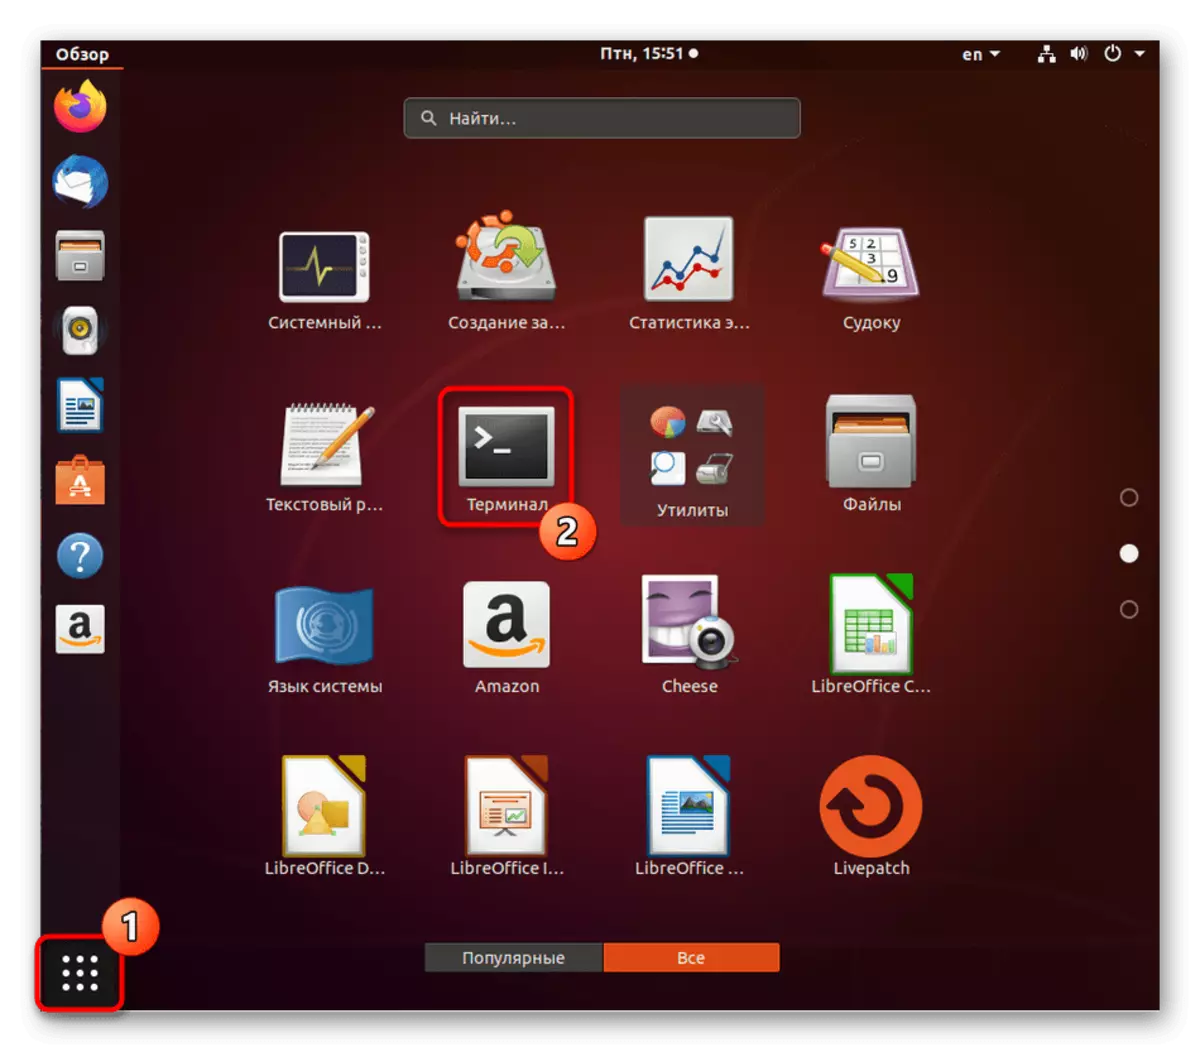 Aneu al terminal per a més configuració del tallafoc UFW a Ubuntu